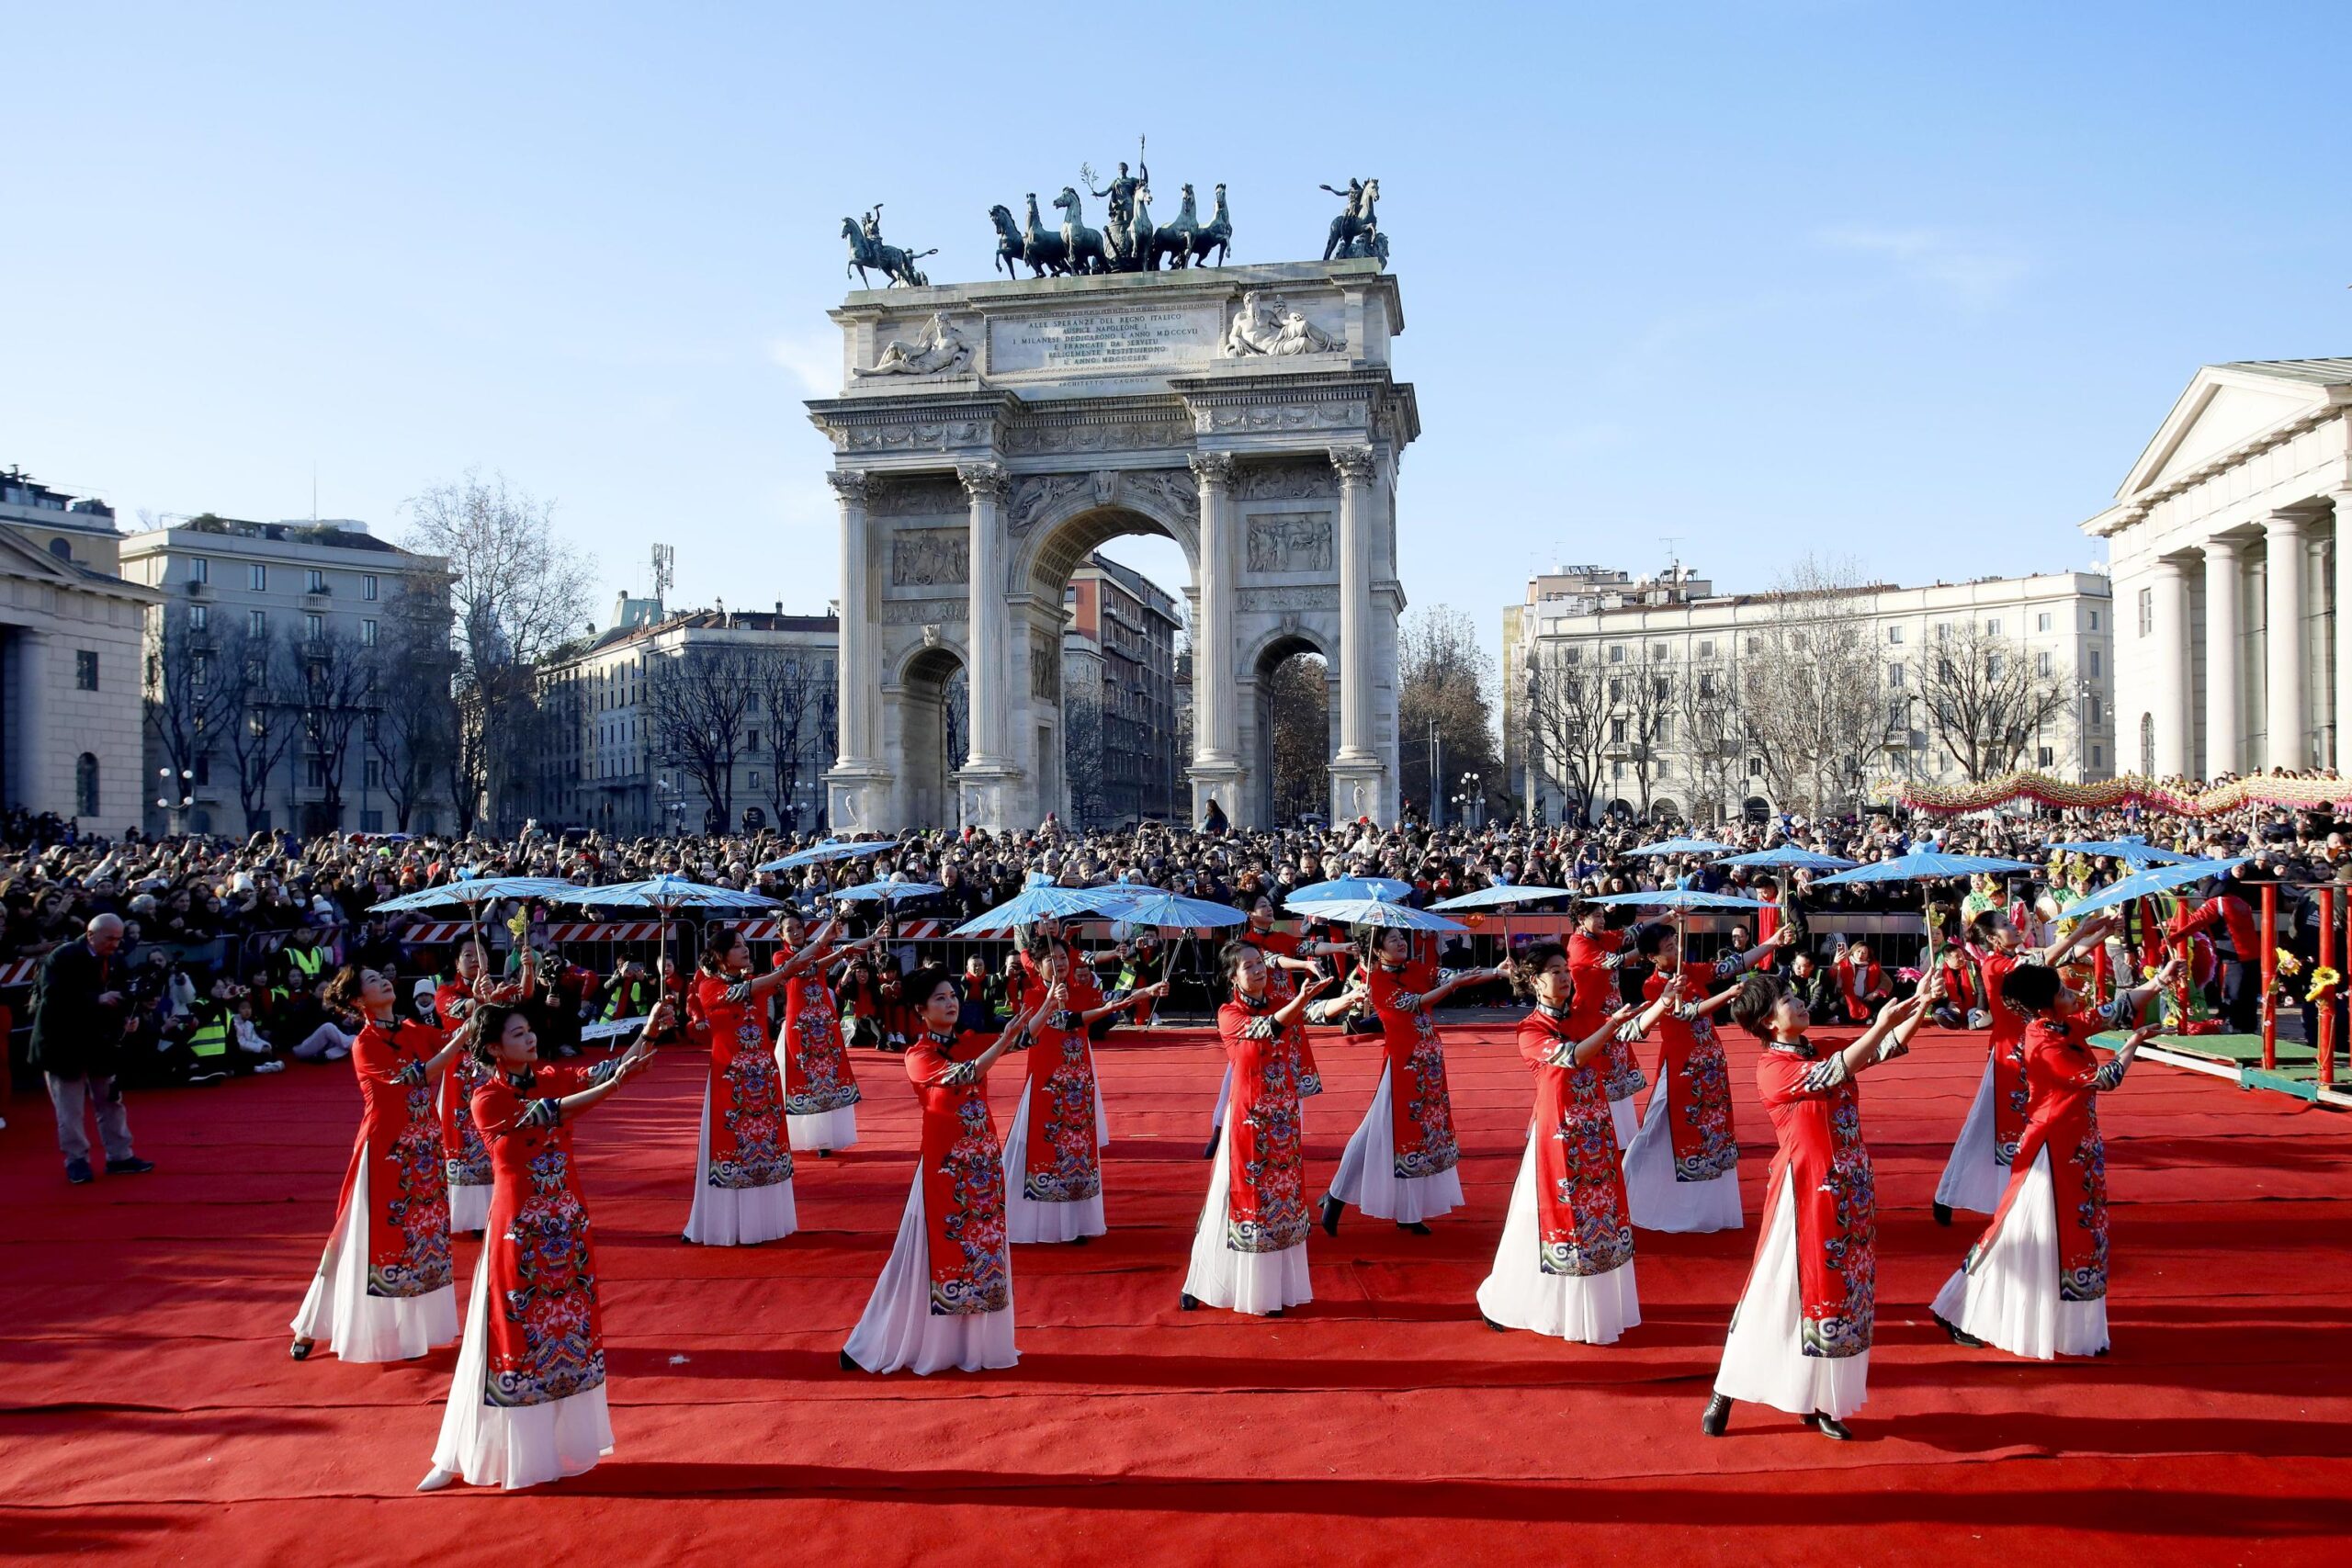 Festeggiamenti per il capodanno cinese all'Arco della Pace a Milano, 22 gennaio 2023.ANSA/MOURAD BALTI TOUATI